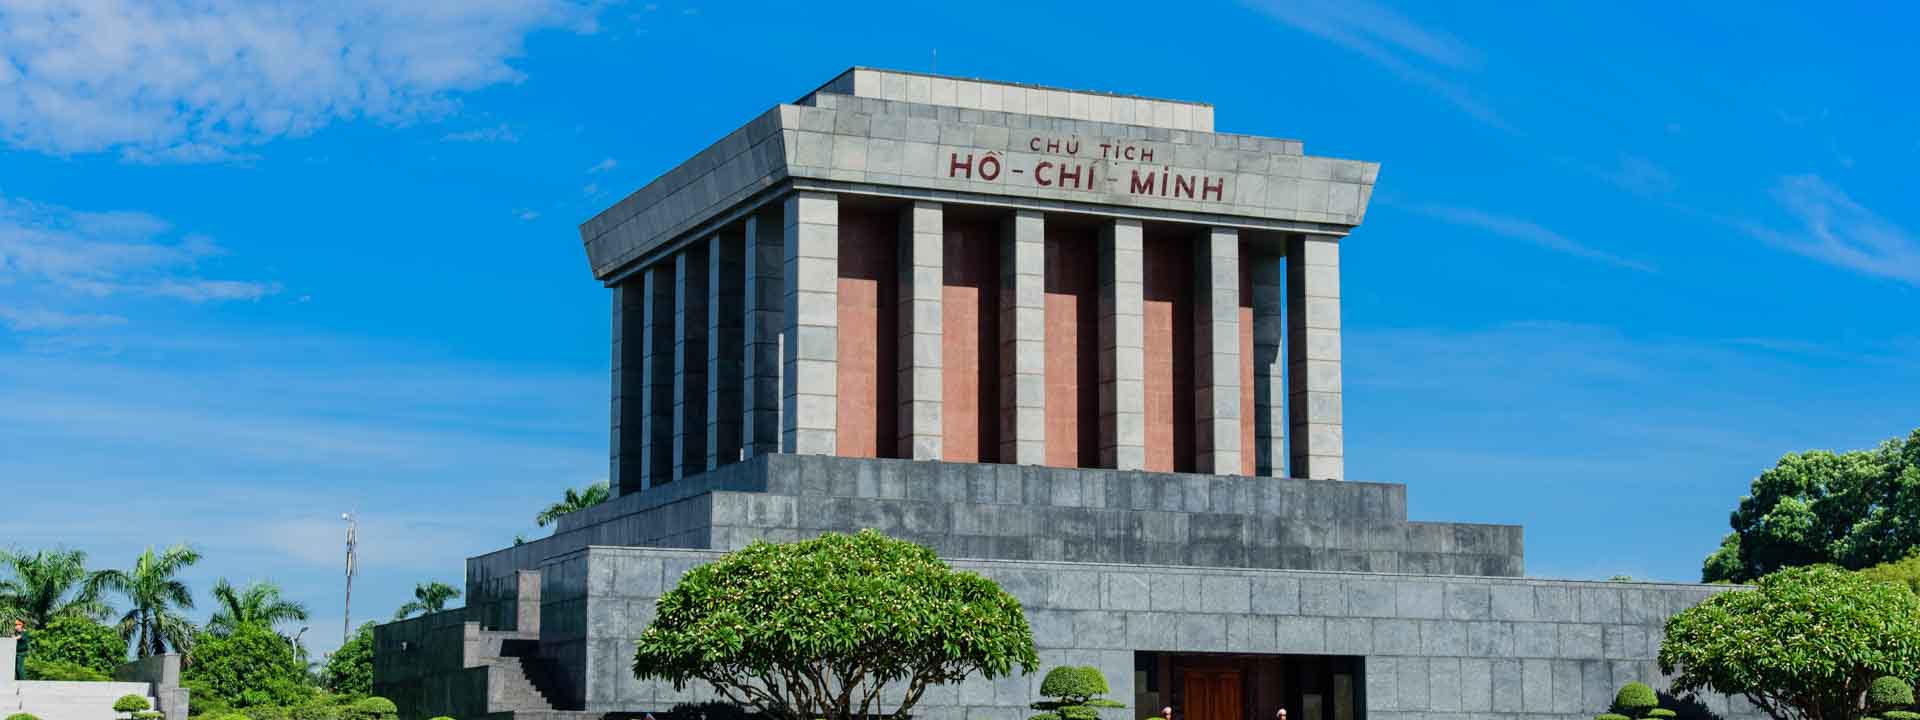 Incredibile tour di Hanoi e Ho Chi Minh in 7 giorni